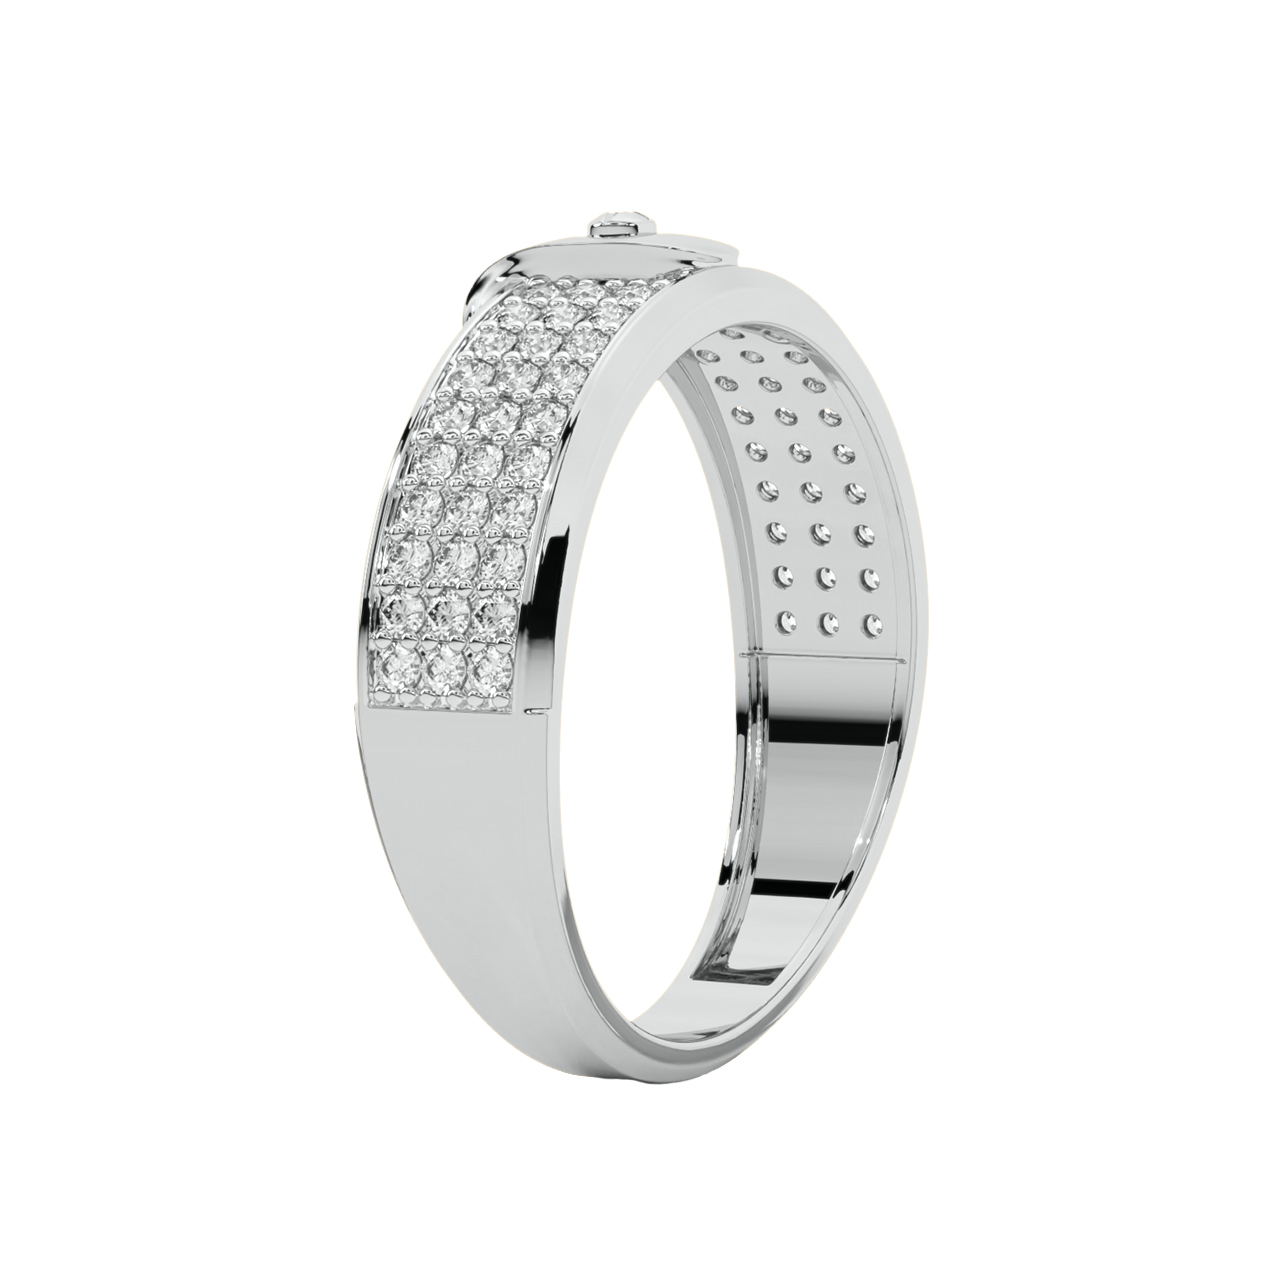 Ava Round Diamond Ring For Men